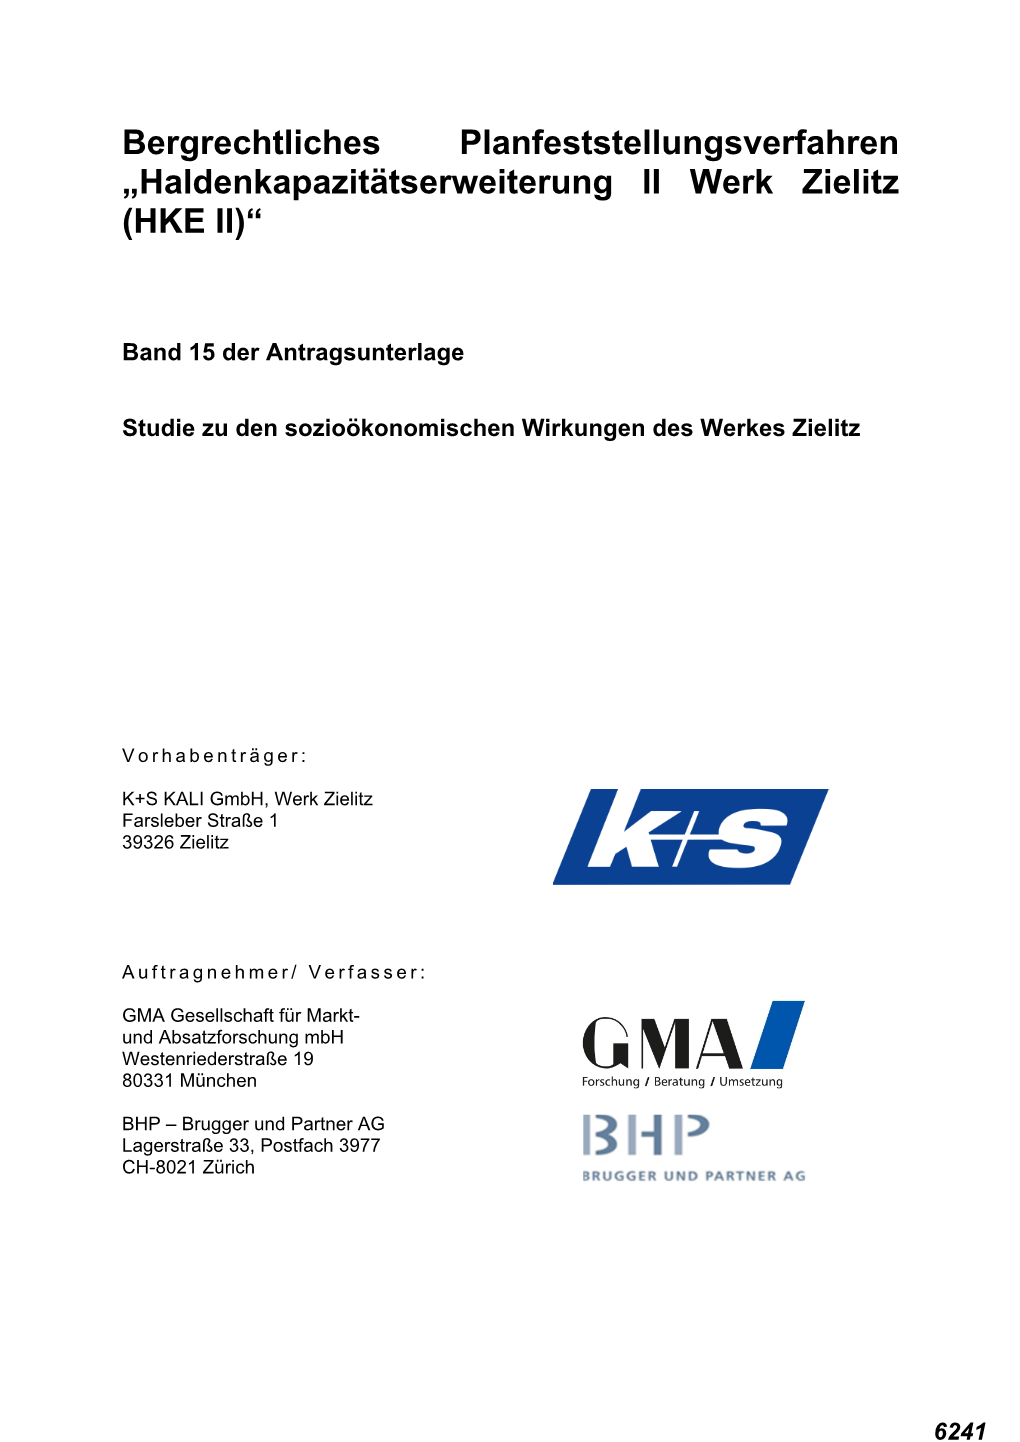 Haldenkapazitätserweiterung II Werk Zielitz (HKE II)“